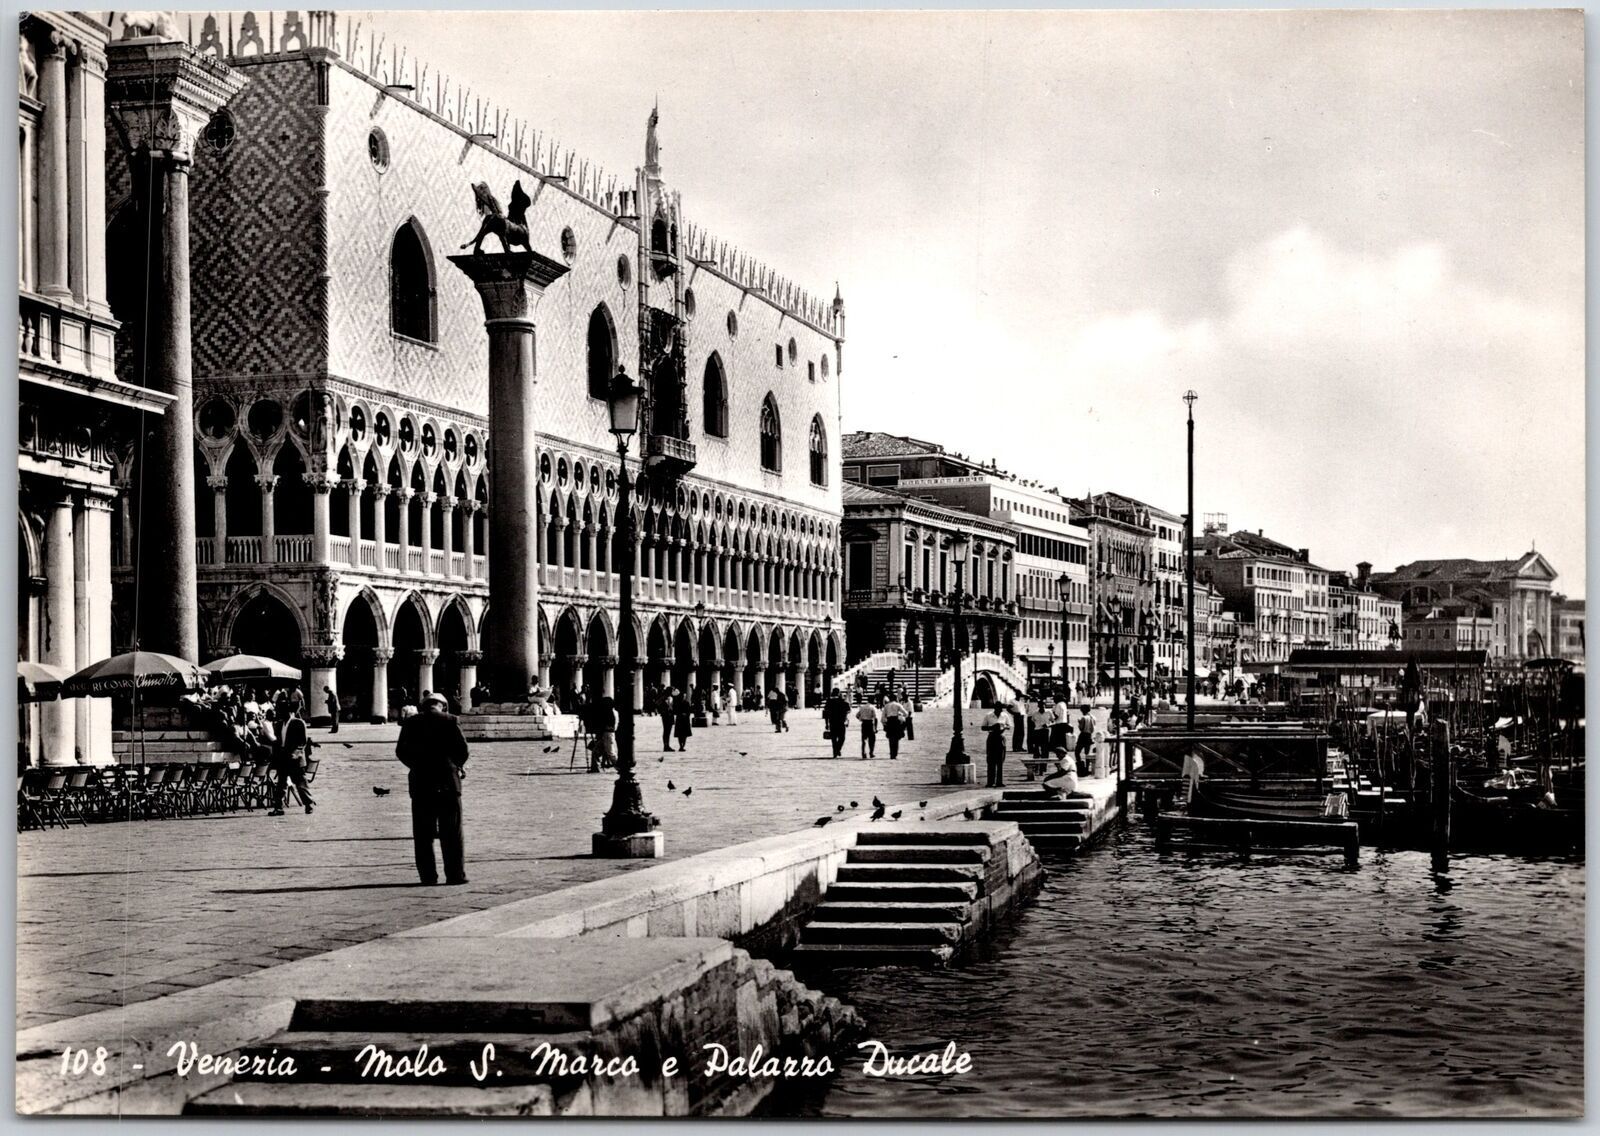 Venezia Molo S. Marco e Palazza Ducale Venice Italy Real Photo RPPC Postcard